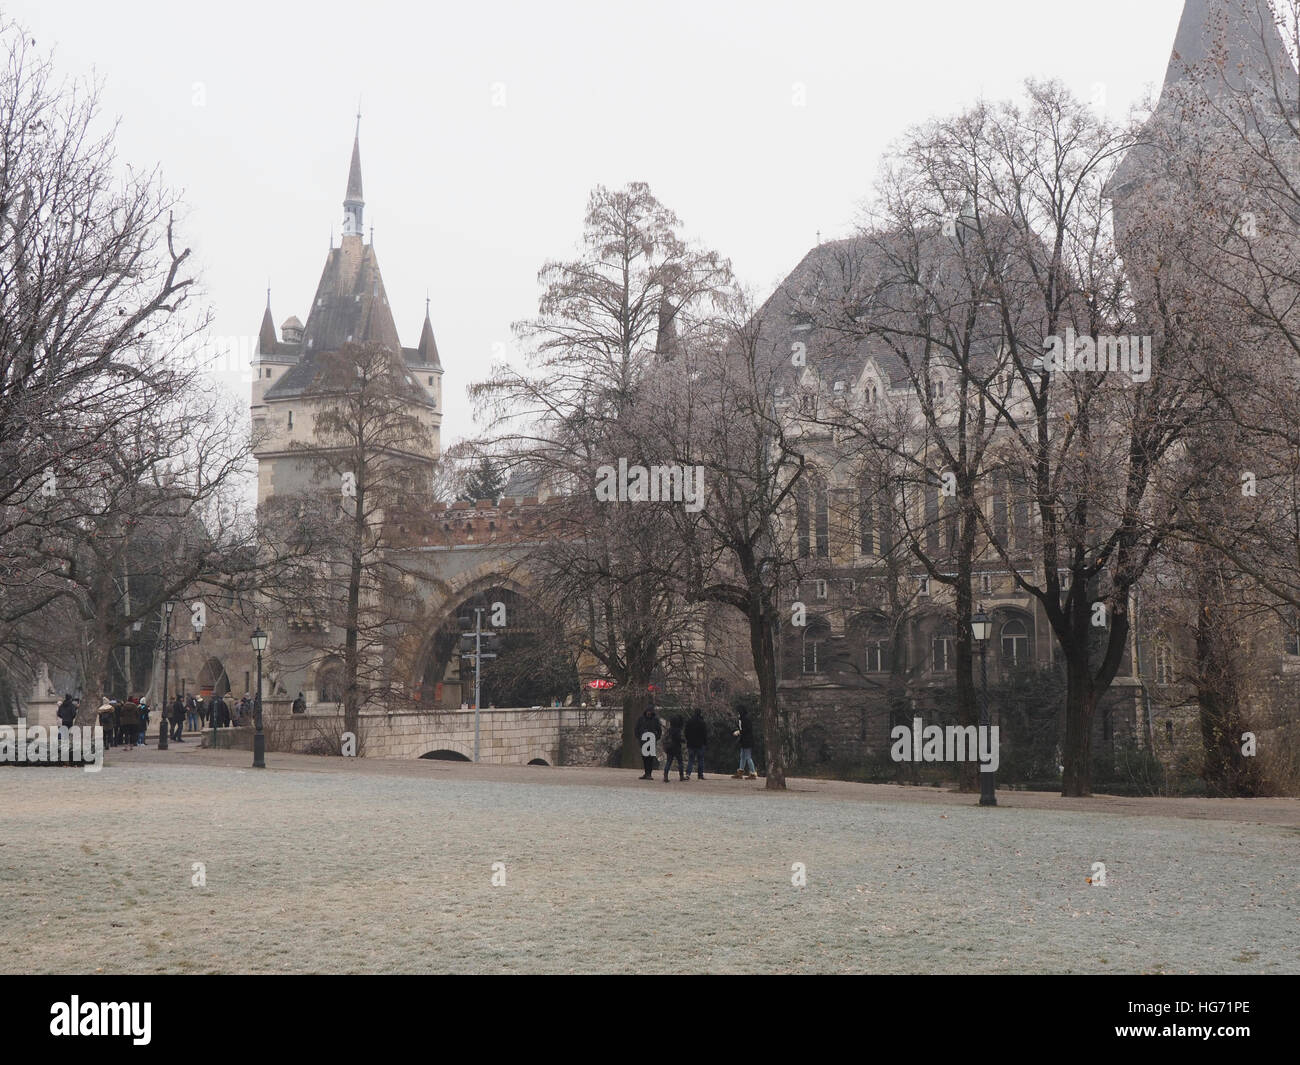 The castle in Varosliget park near hero square in Budapest, Hungary, in winter season. Stock Photo